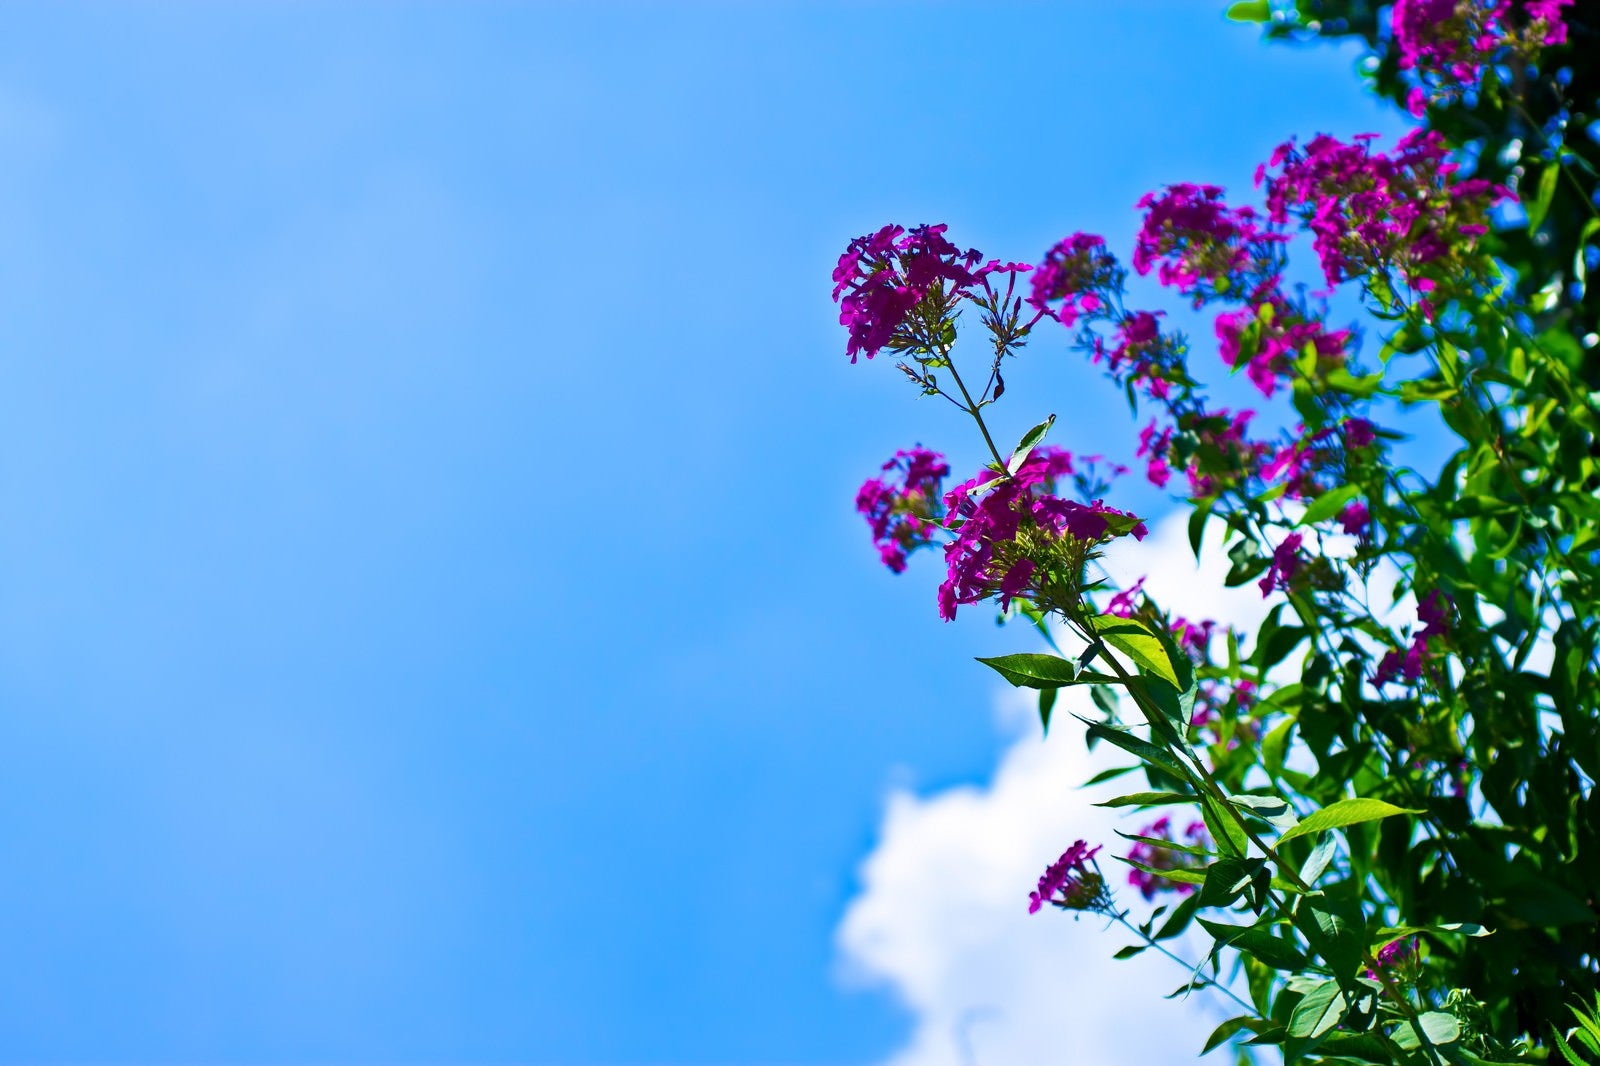 「真夏の青空と紫の花」の写真